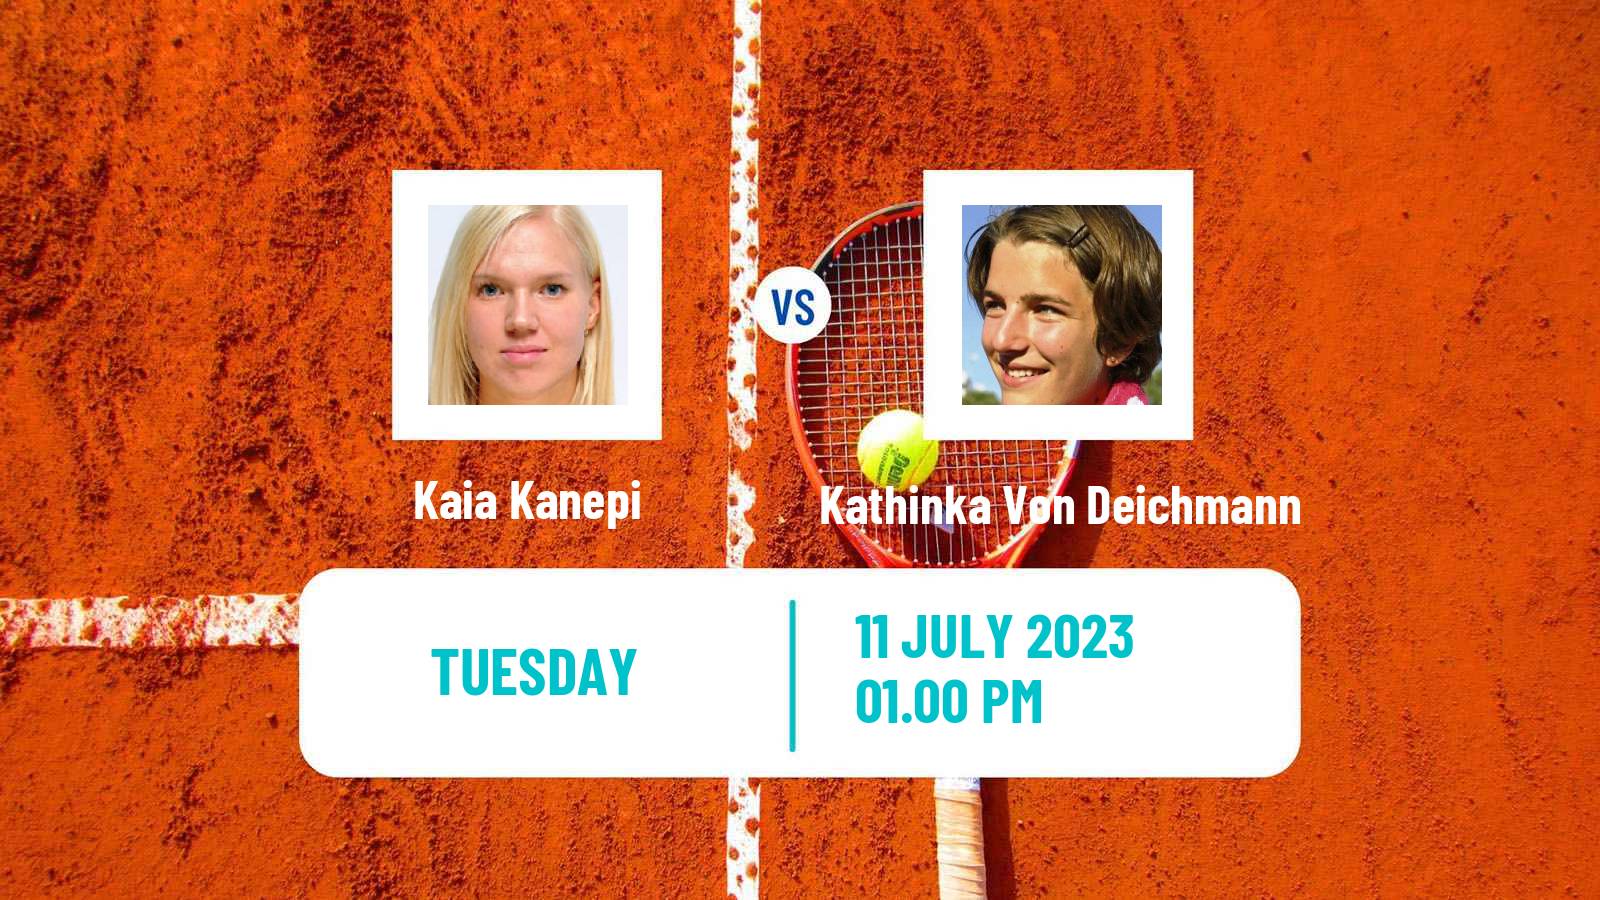 Tennis ITF W60 Amstelveen Women Kaia Kanepi - Kathinka Von Deichmann